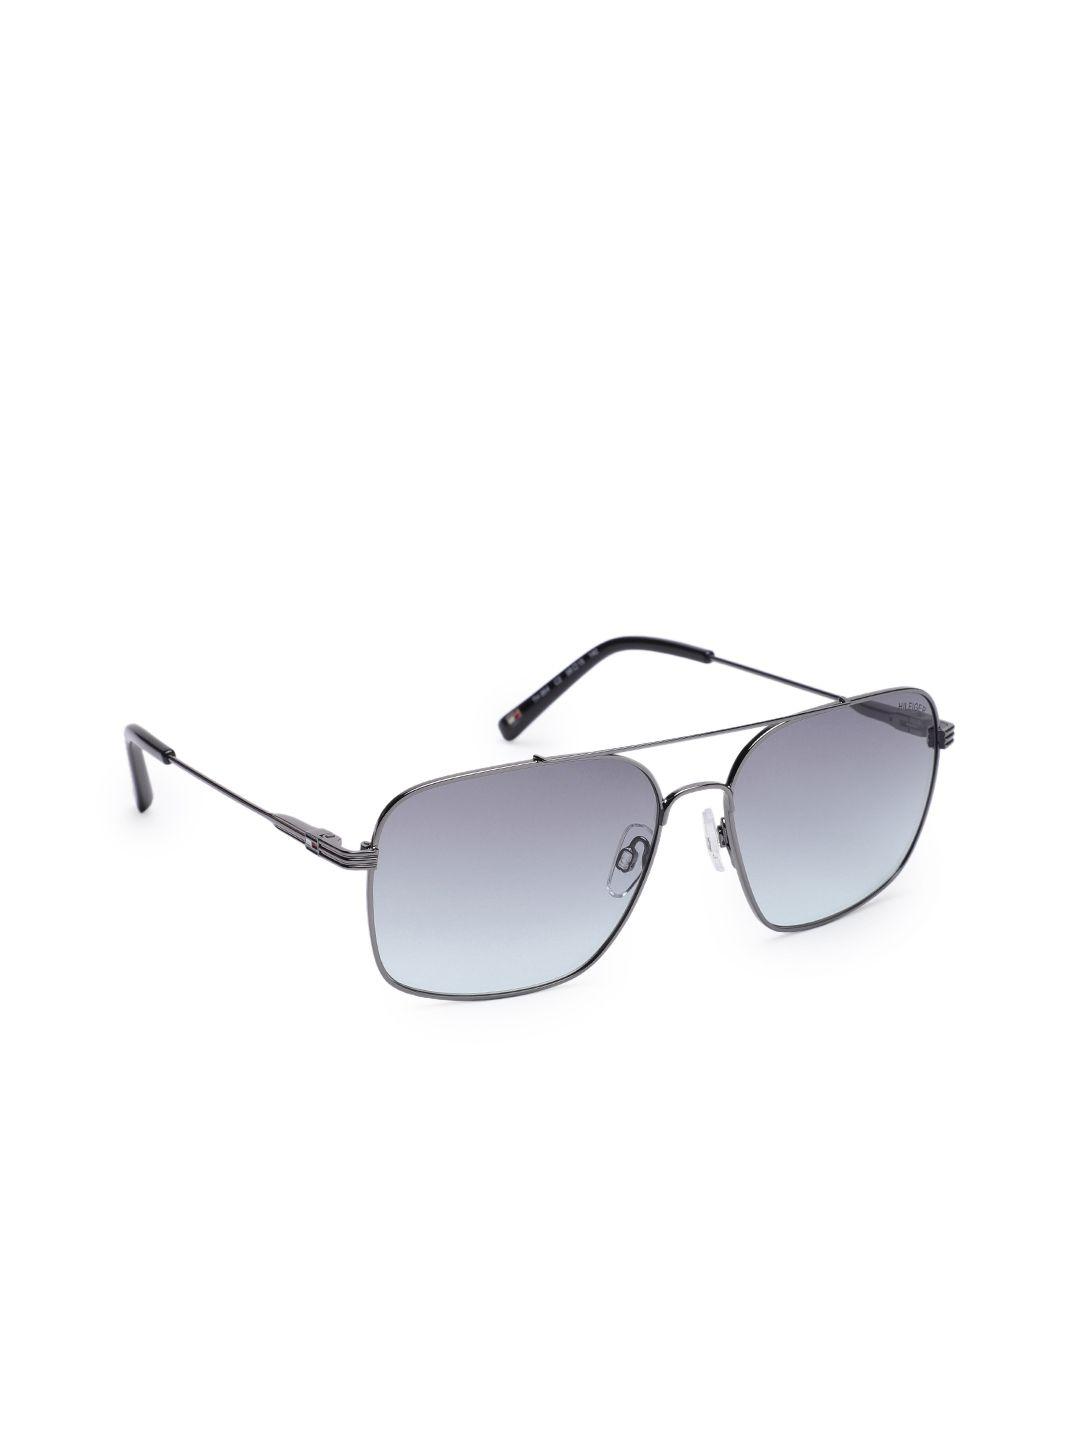 tommy-hilfiger-men-blue-lens-&-gunmetal-toned-aviator-sunglasses-tommy-hilfiger-864-c2-s